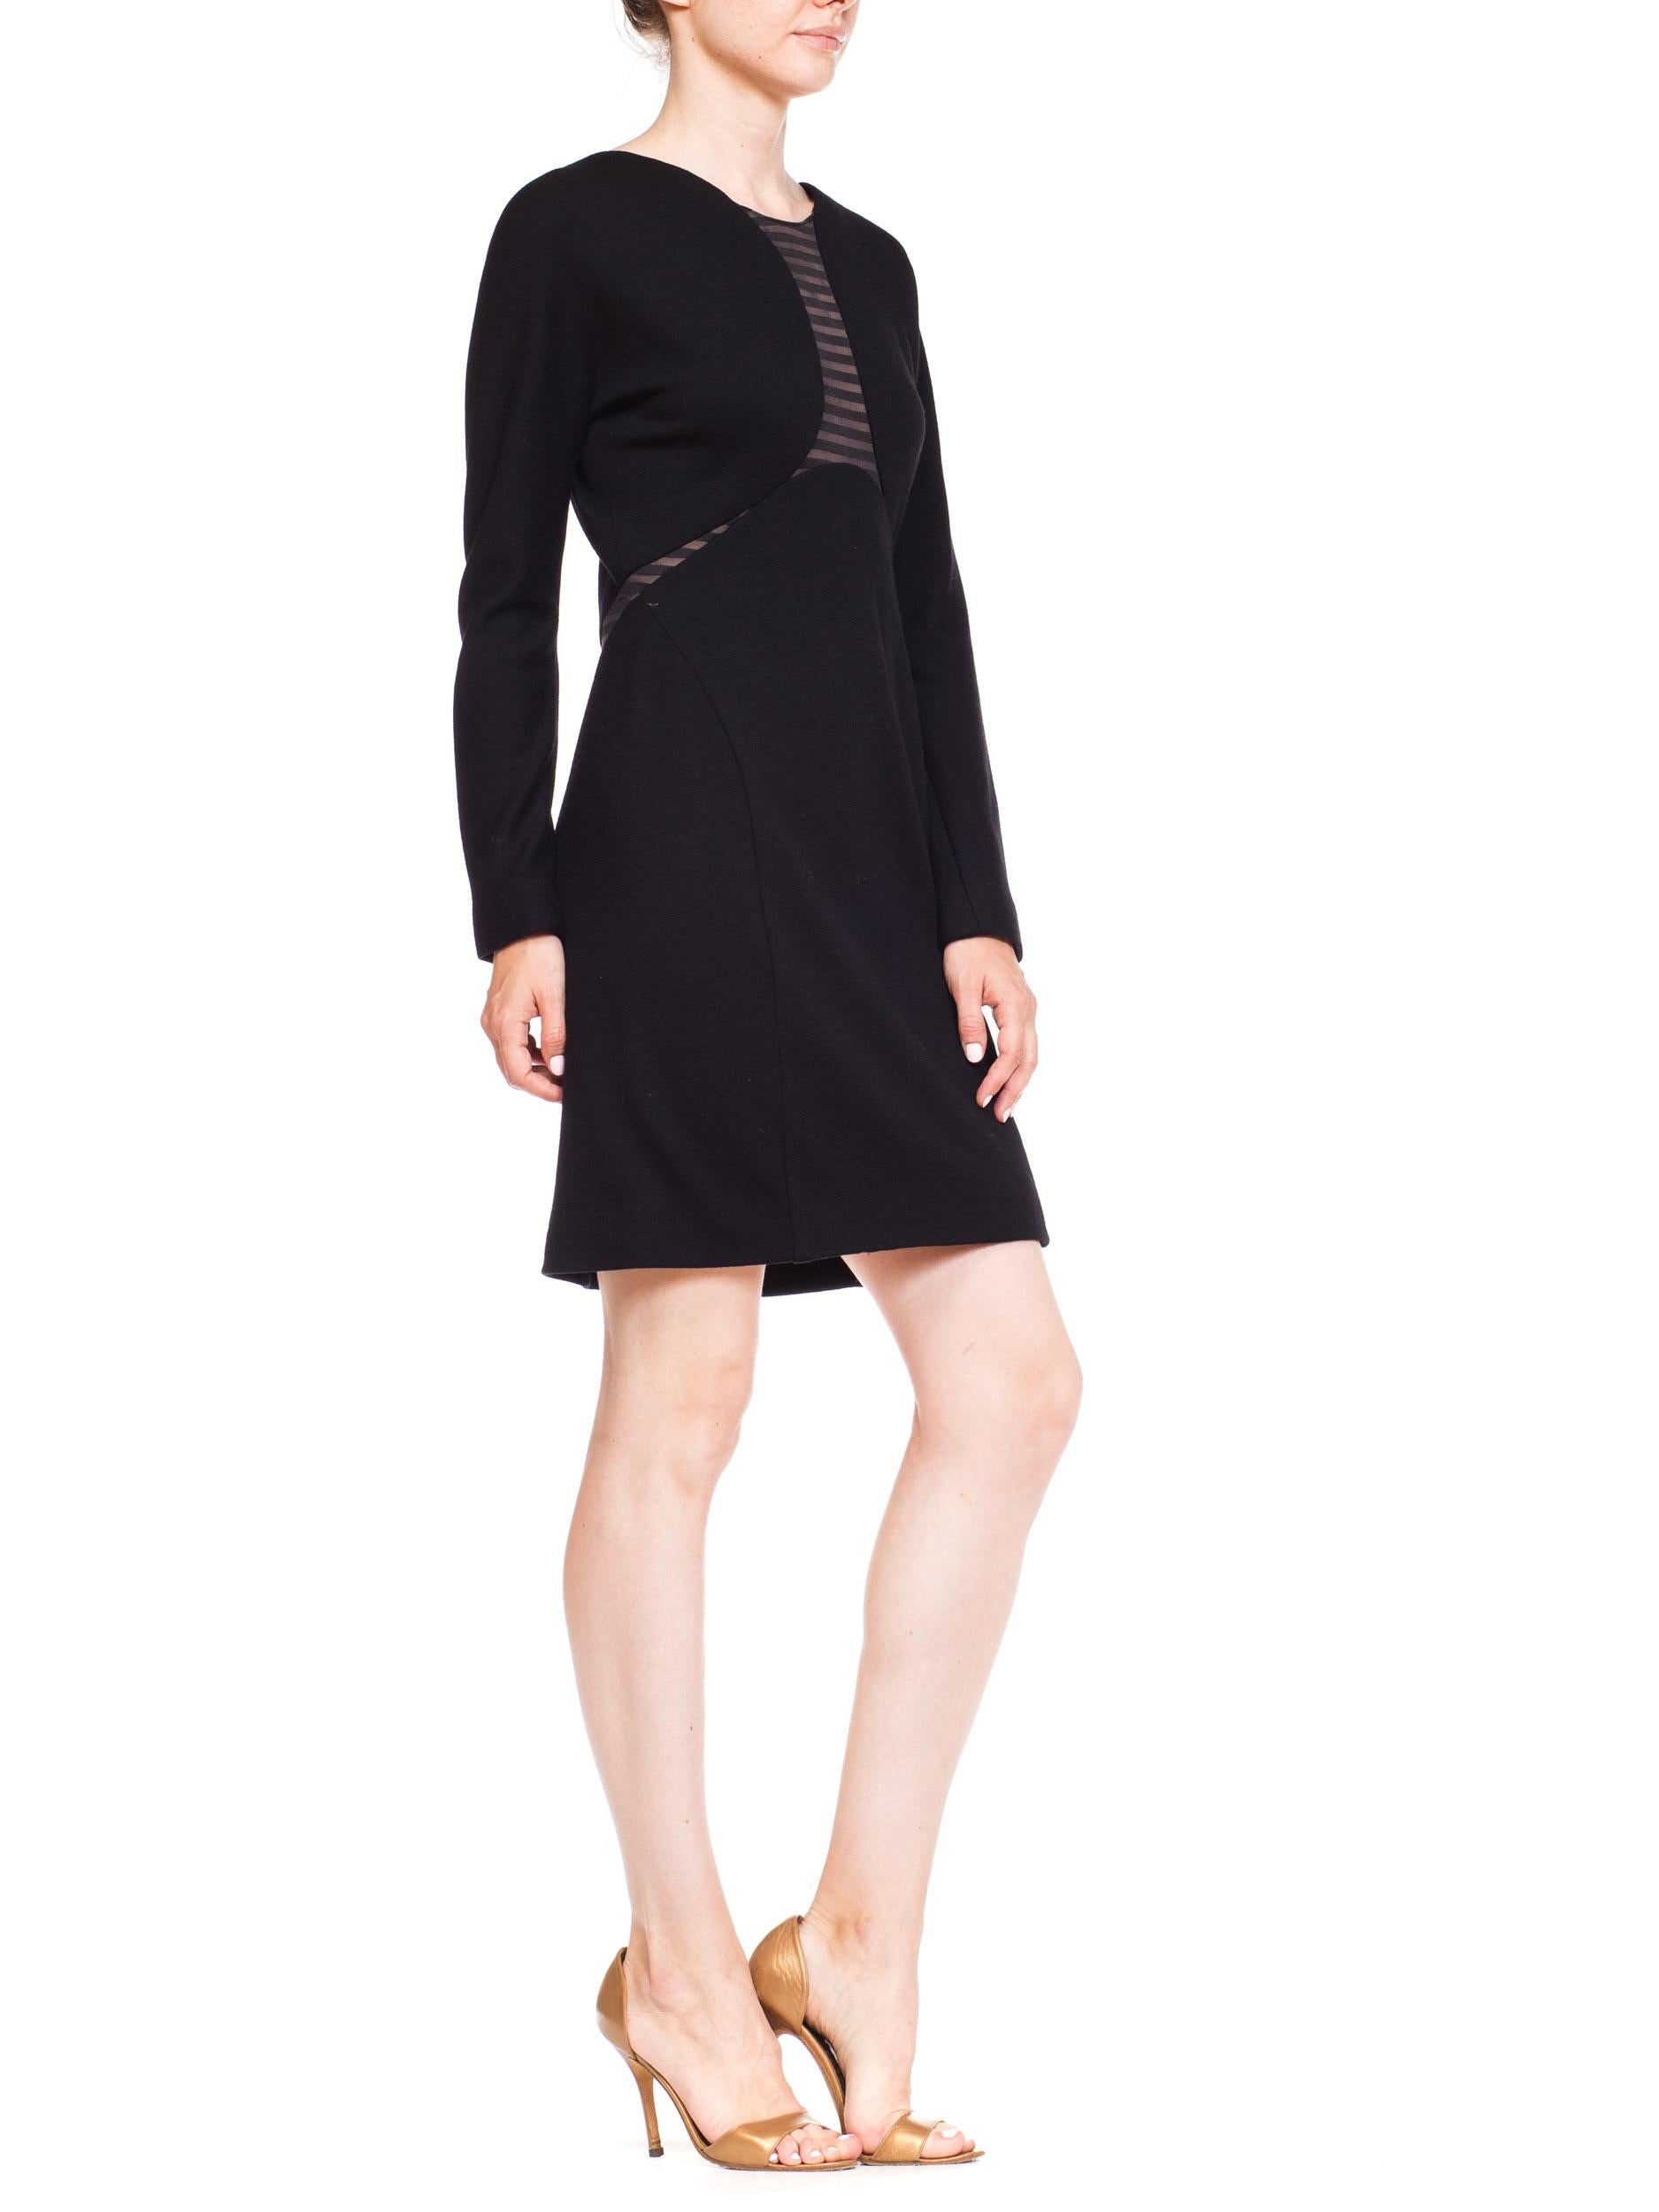 Women's 1990S GEOFFREY BEENE Black Wool Jersey Long Sleeve  Dress With Sheer Striped Pa For Sale